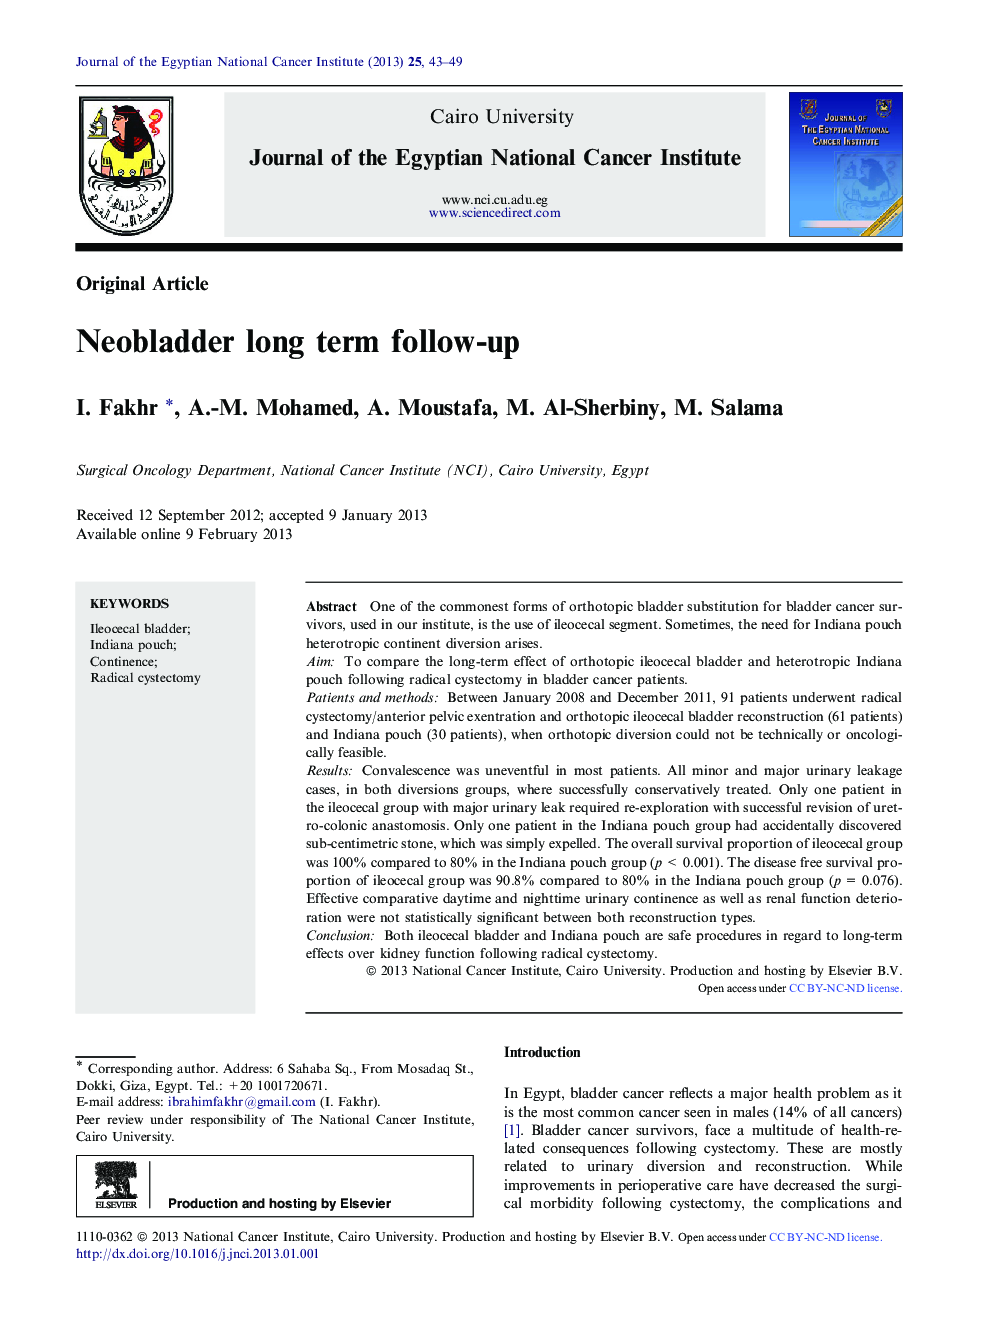 Neobladder long term follow-up 